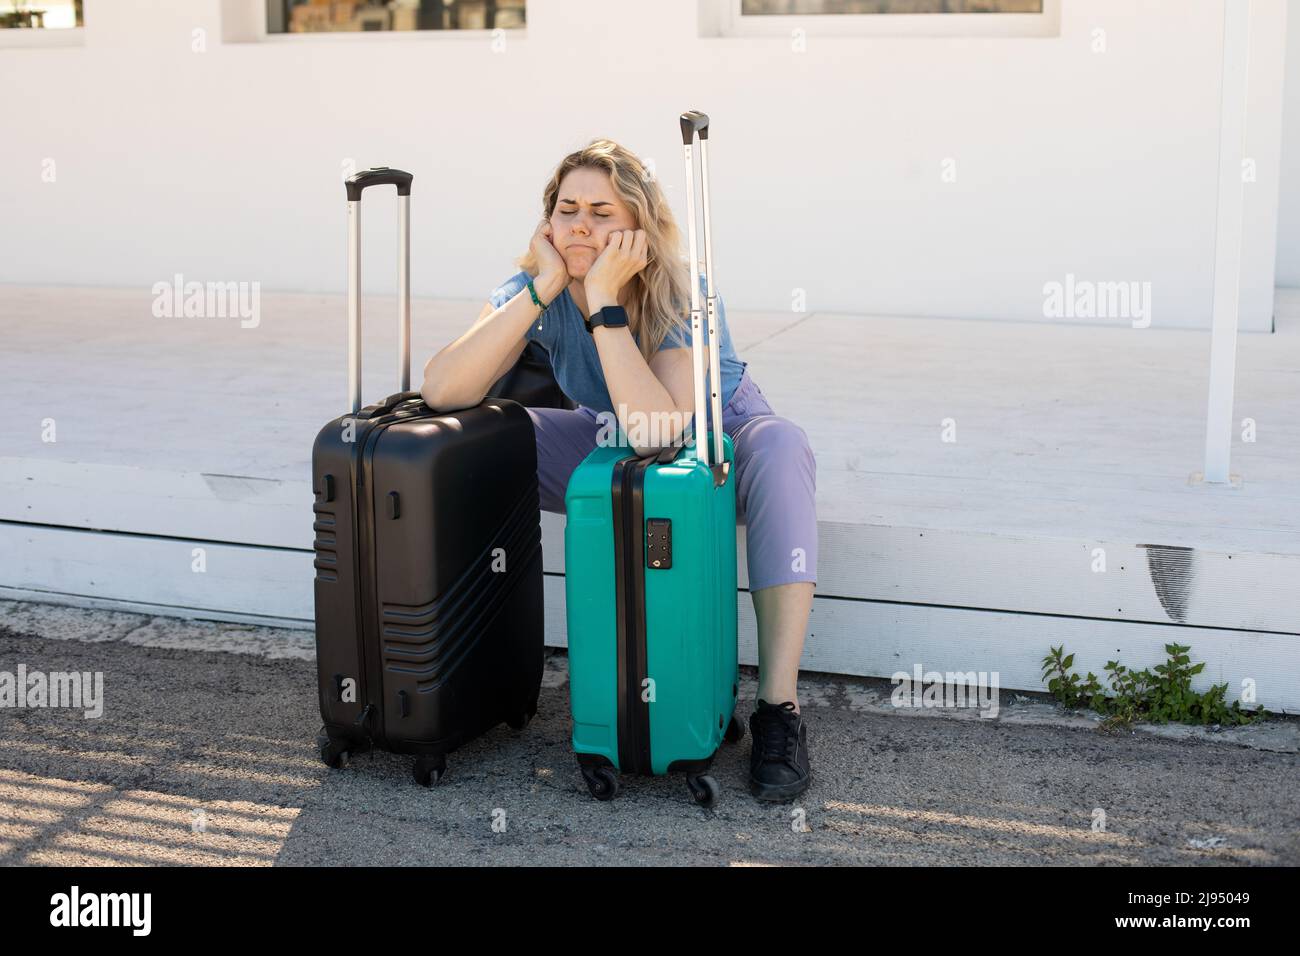 Femme blonde fatiguée, bouleversée avec des bagages, se pencher sur des sacs, assis à l'extérieur près de la gare routière sur la plate-forme, lutte de la chaleur Banque D'Images